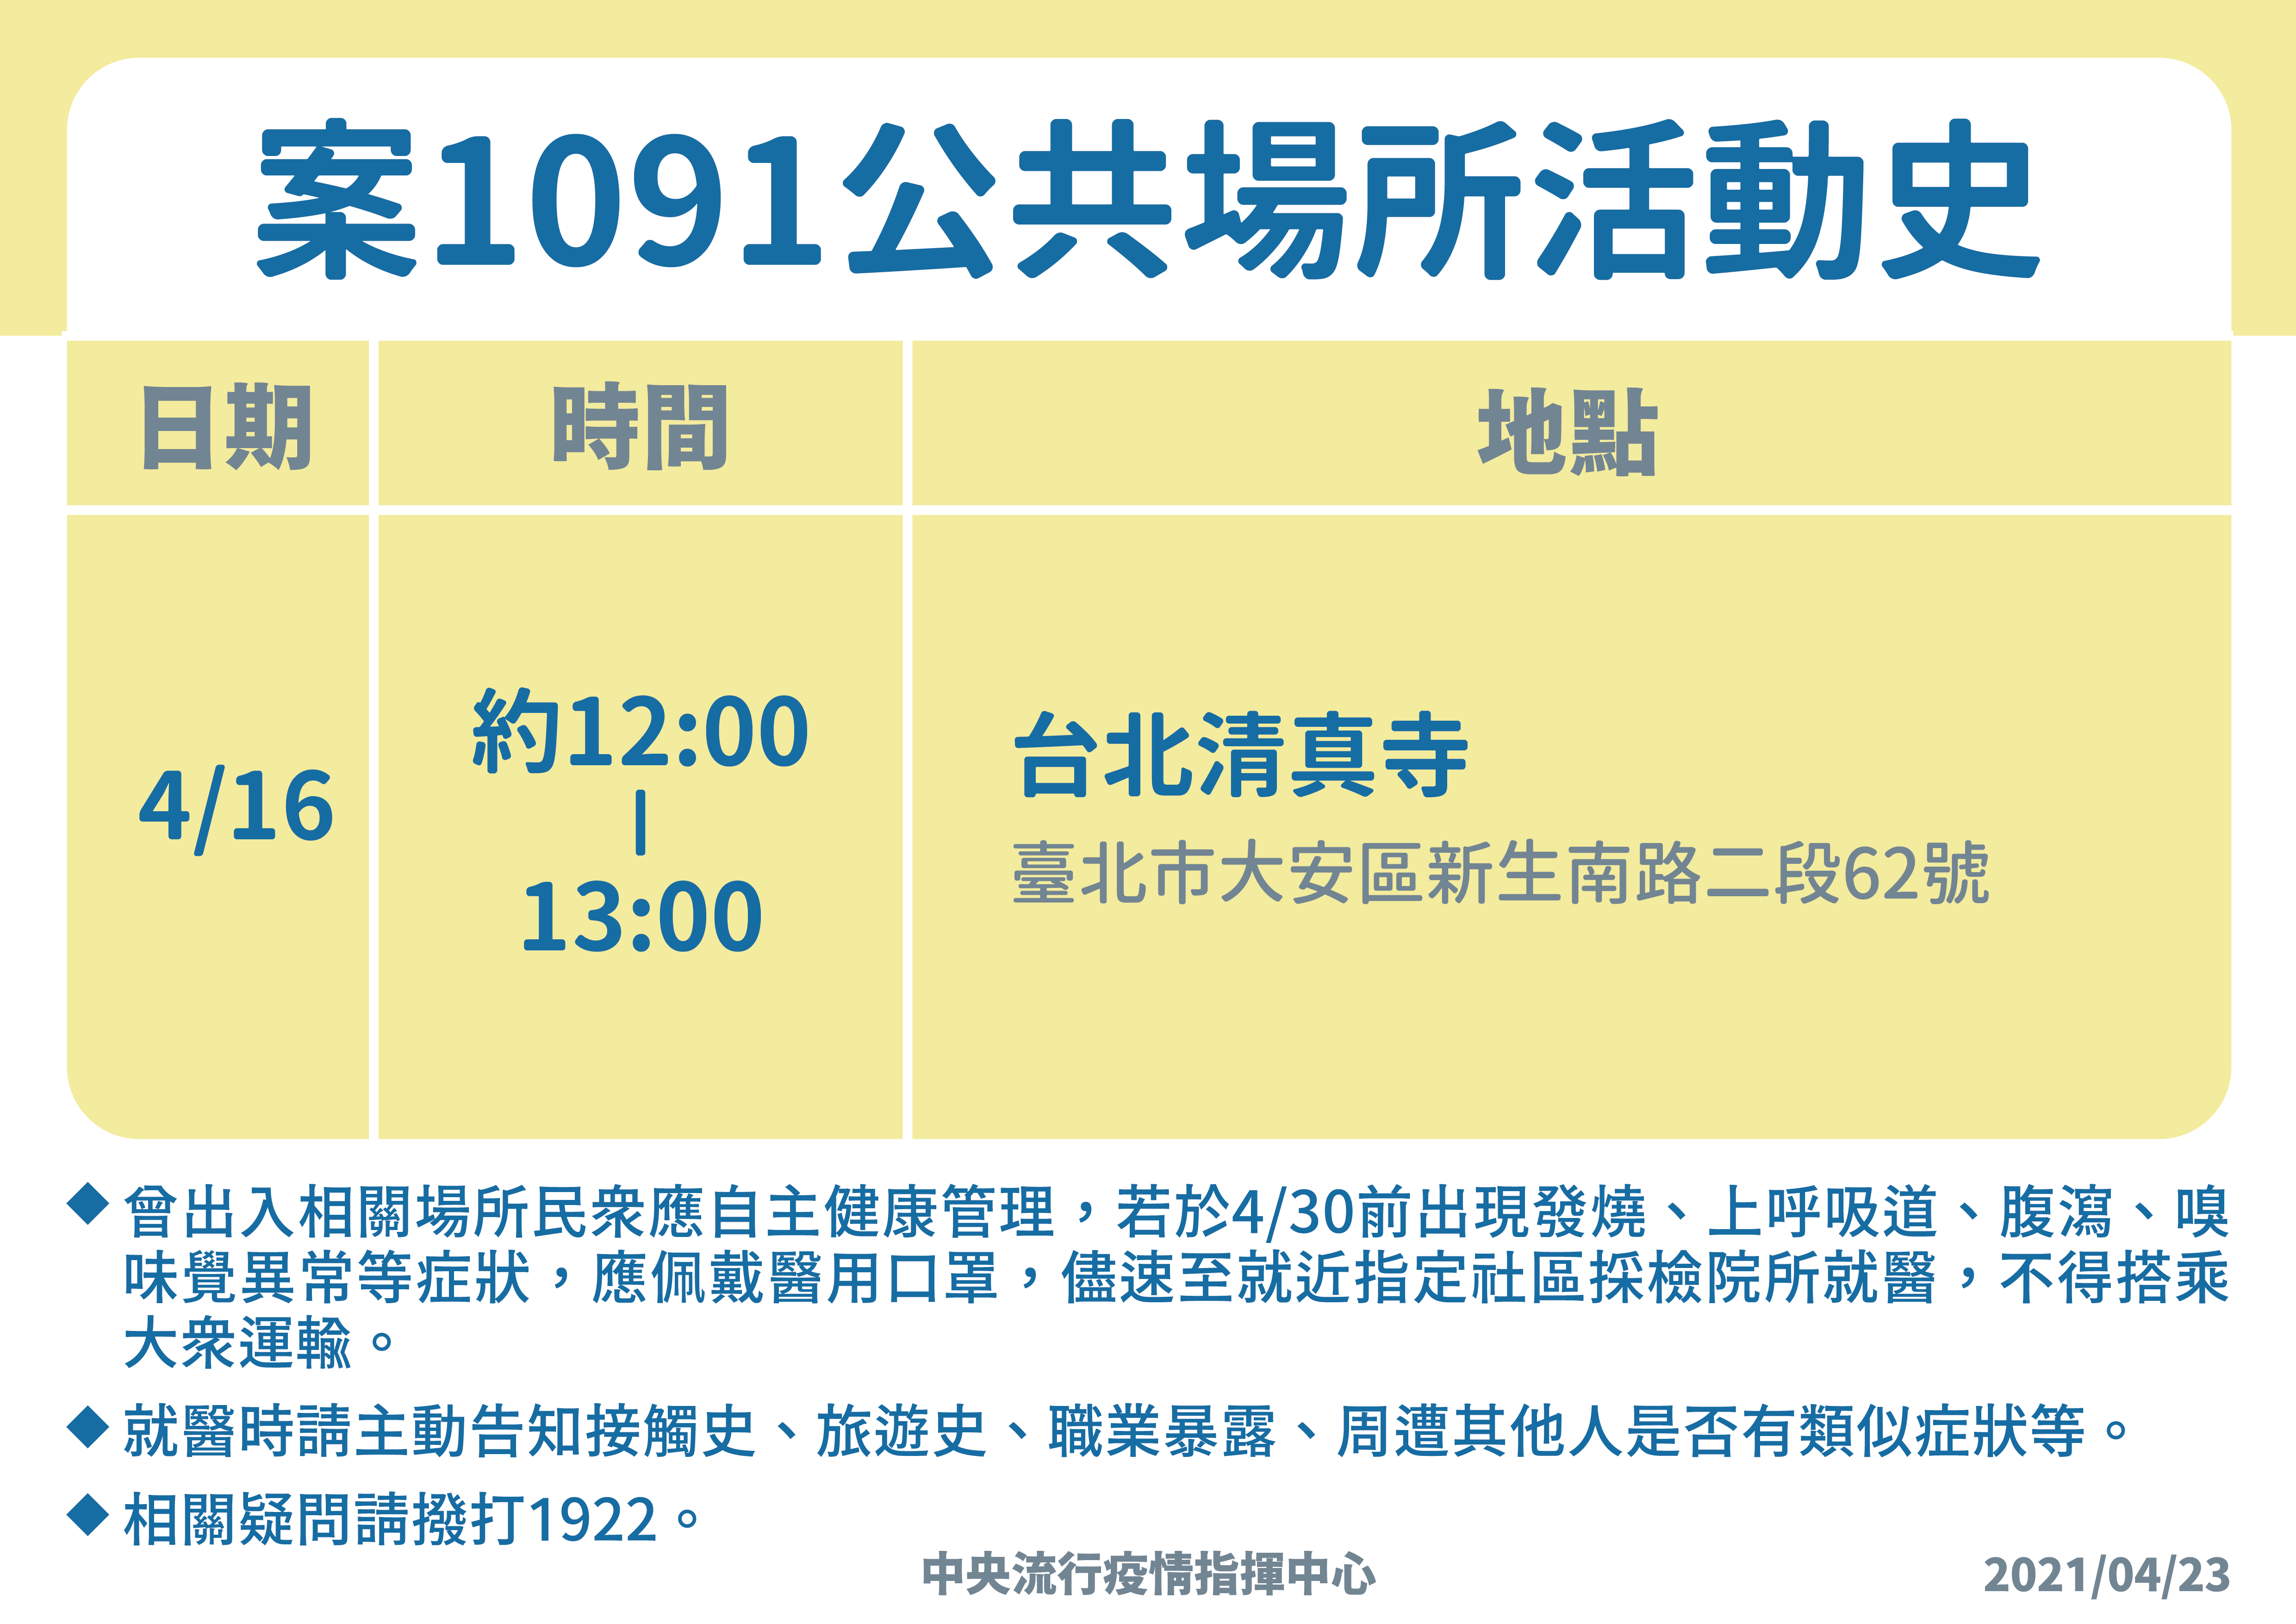 Bagi Siapapun yang Pergi ke Taipei dan Masjid Dayuan pada Tanggal 16 dan 19 April Direkomendasikan untuk Menjalani Manajemen Kesehatan Mandiri Selama 14 hari. Sumber : CECC